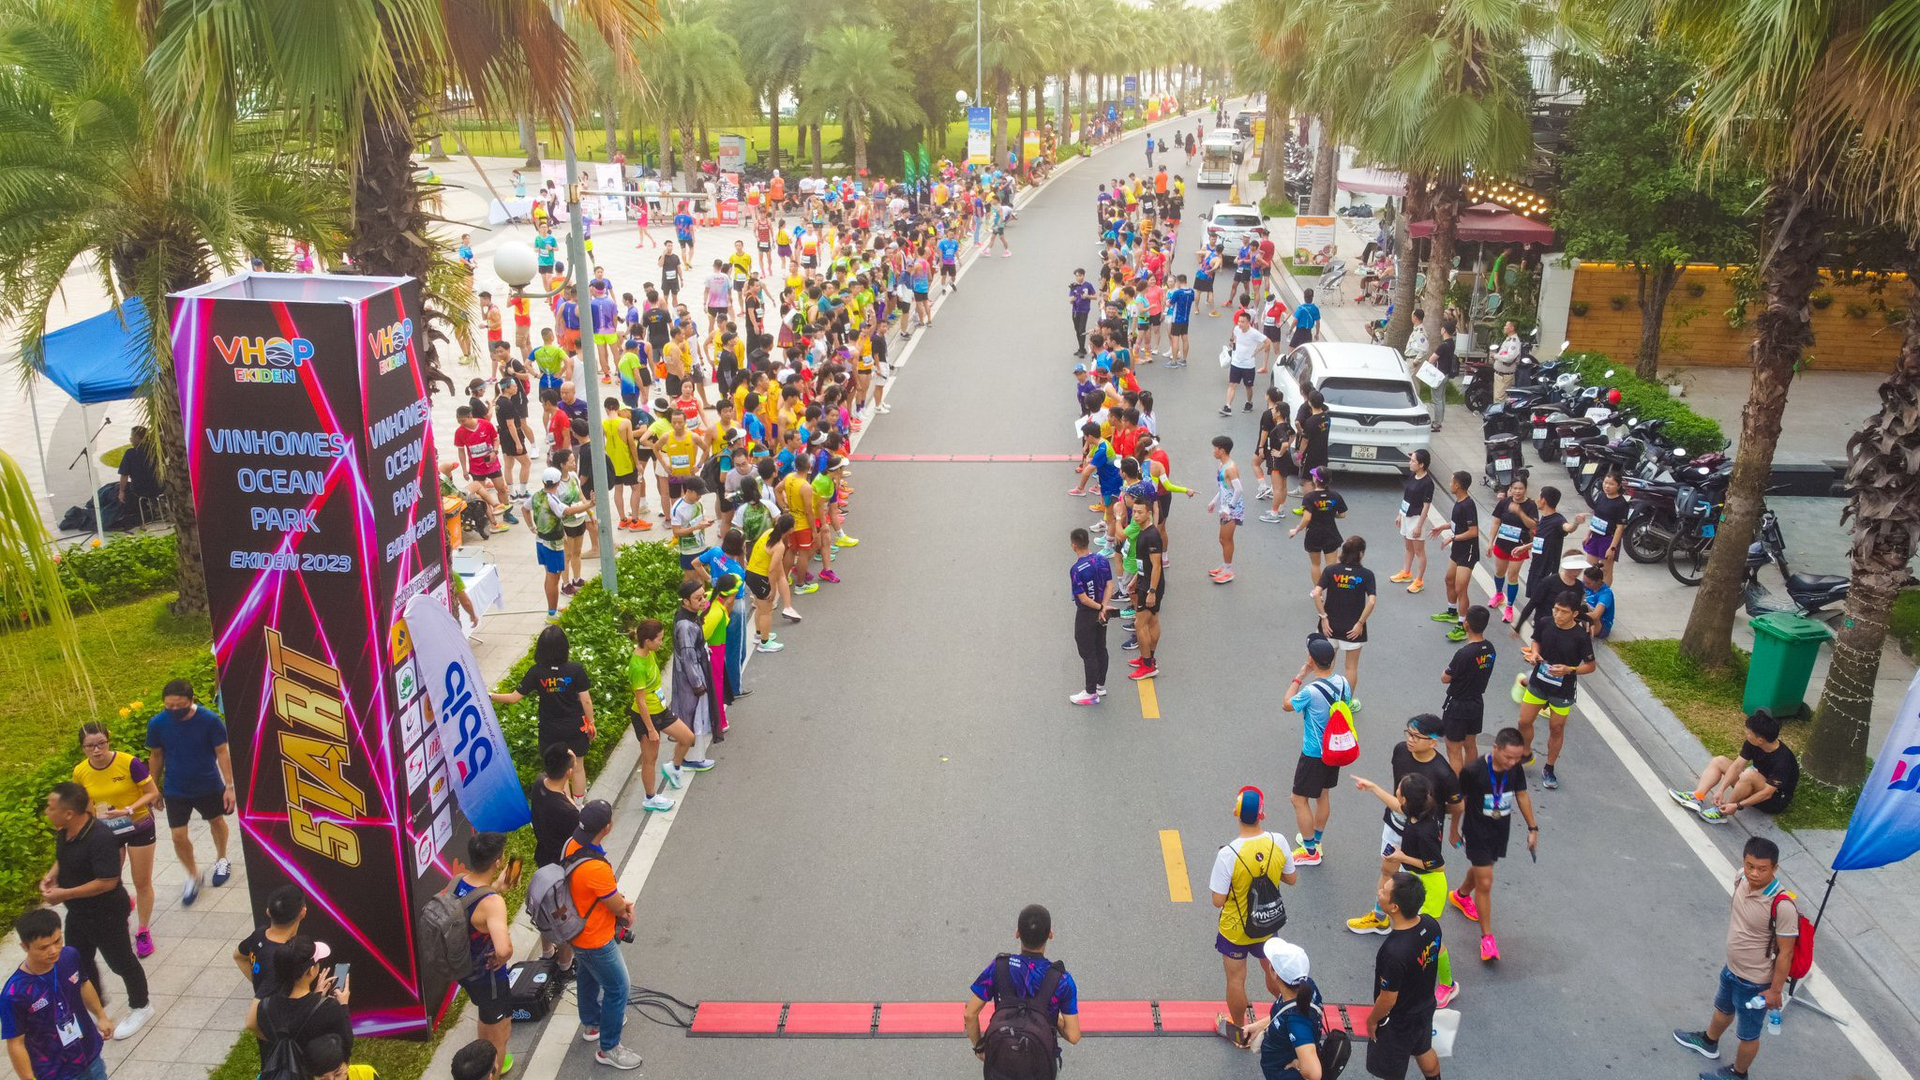 Thành viên Câu lạc bộ Vinhomes Ocean Park Runners vừa hàng xóm láng giềng thân thiết vừa là chiến hữu trên đường chạy